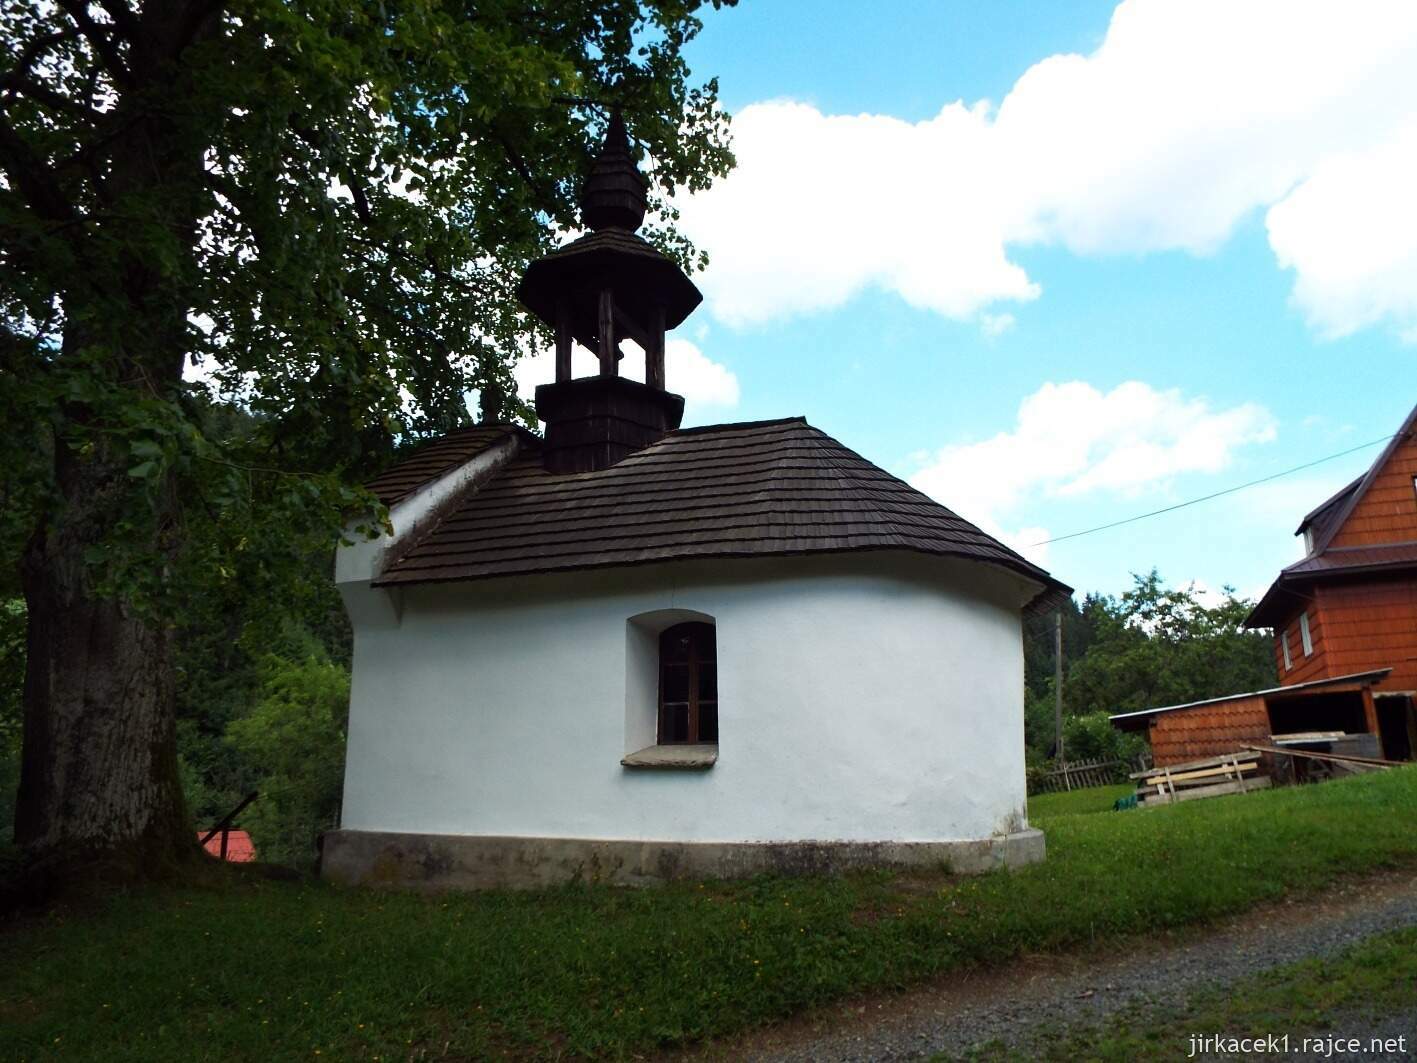 018 - Velké Karlovice - Kaple svaté Trojice v Jezerném 08